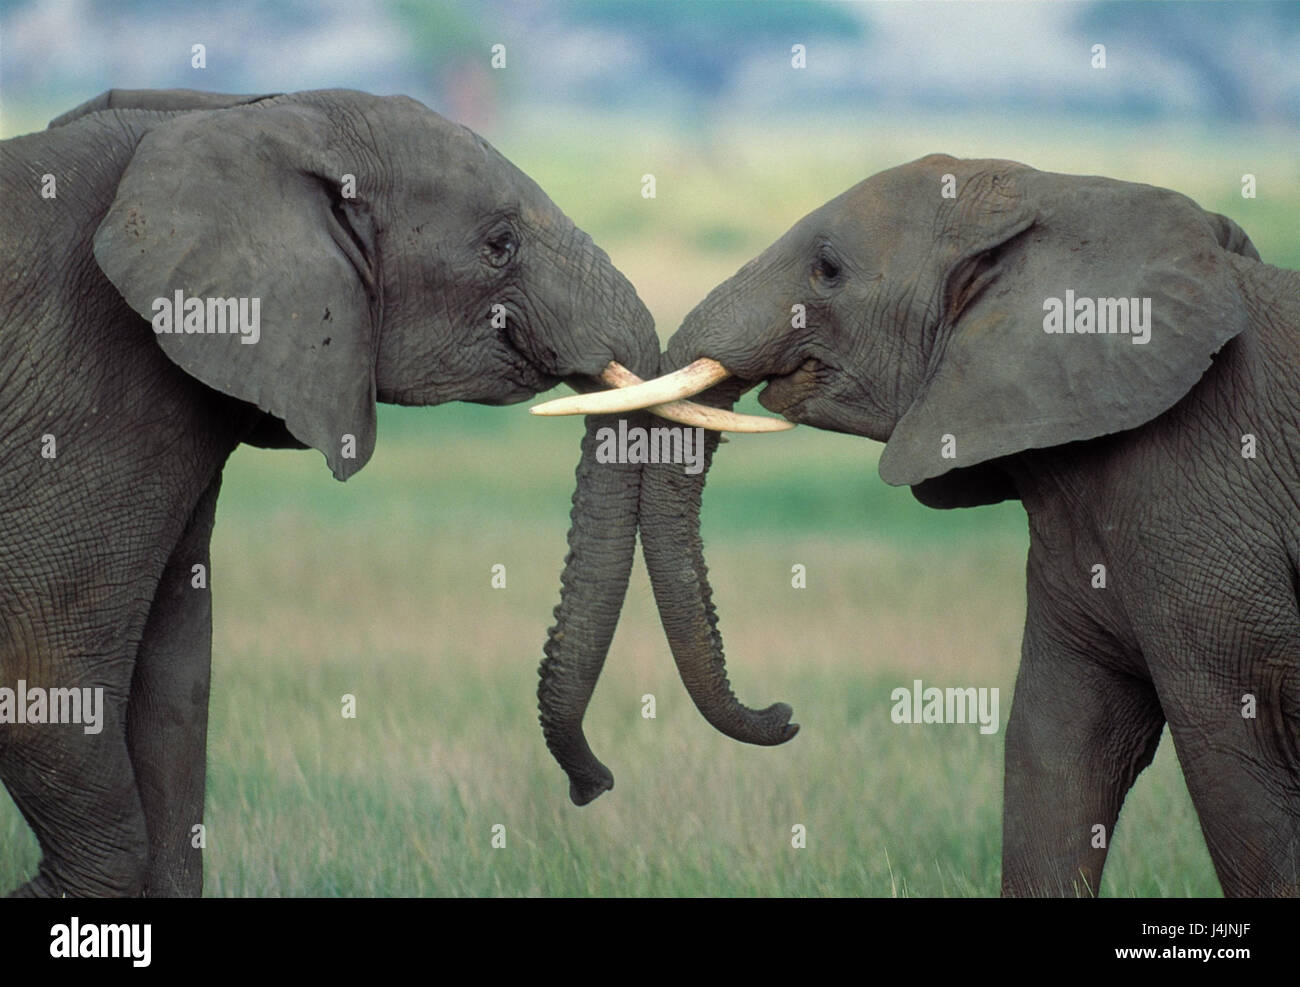 Afrikanische Elefanten, Loxodonta Africana, Touch, Stamm Afrika, Tiere, Wildtiere, Stamm Tier, Landsäugetier, Dickhäuter, Säugetier, Elefant, Elefanten, zwei, in der Nähe Stockfoto